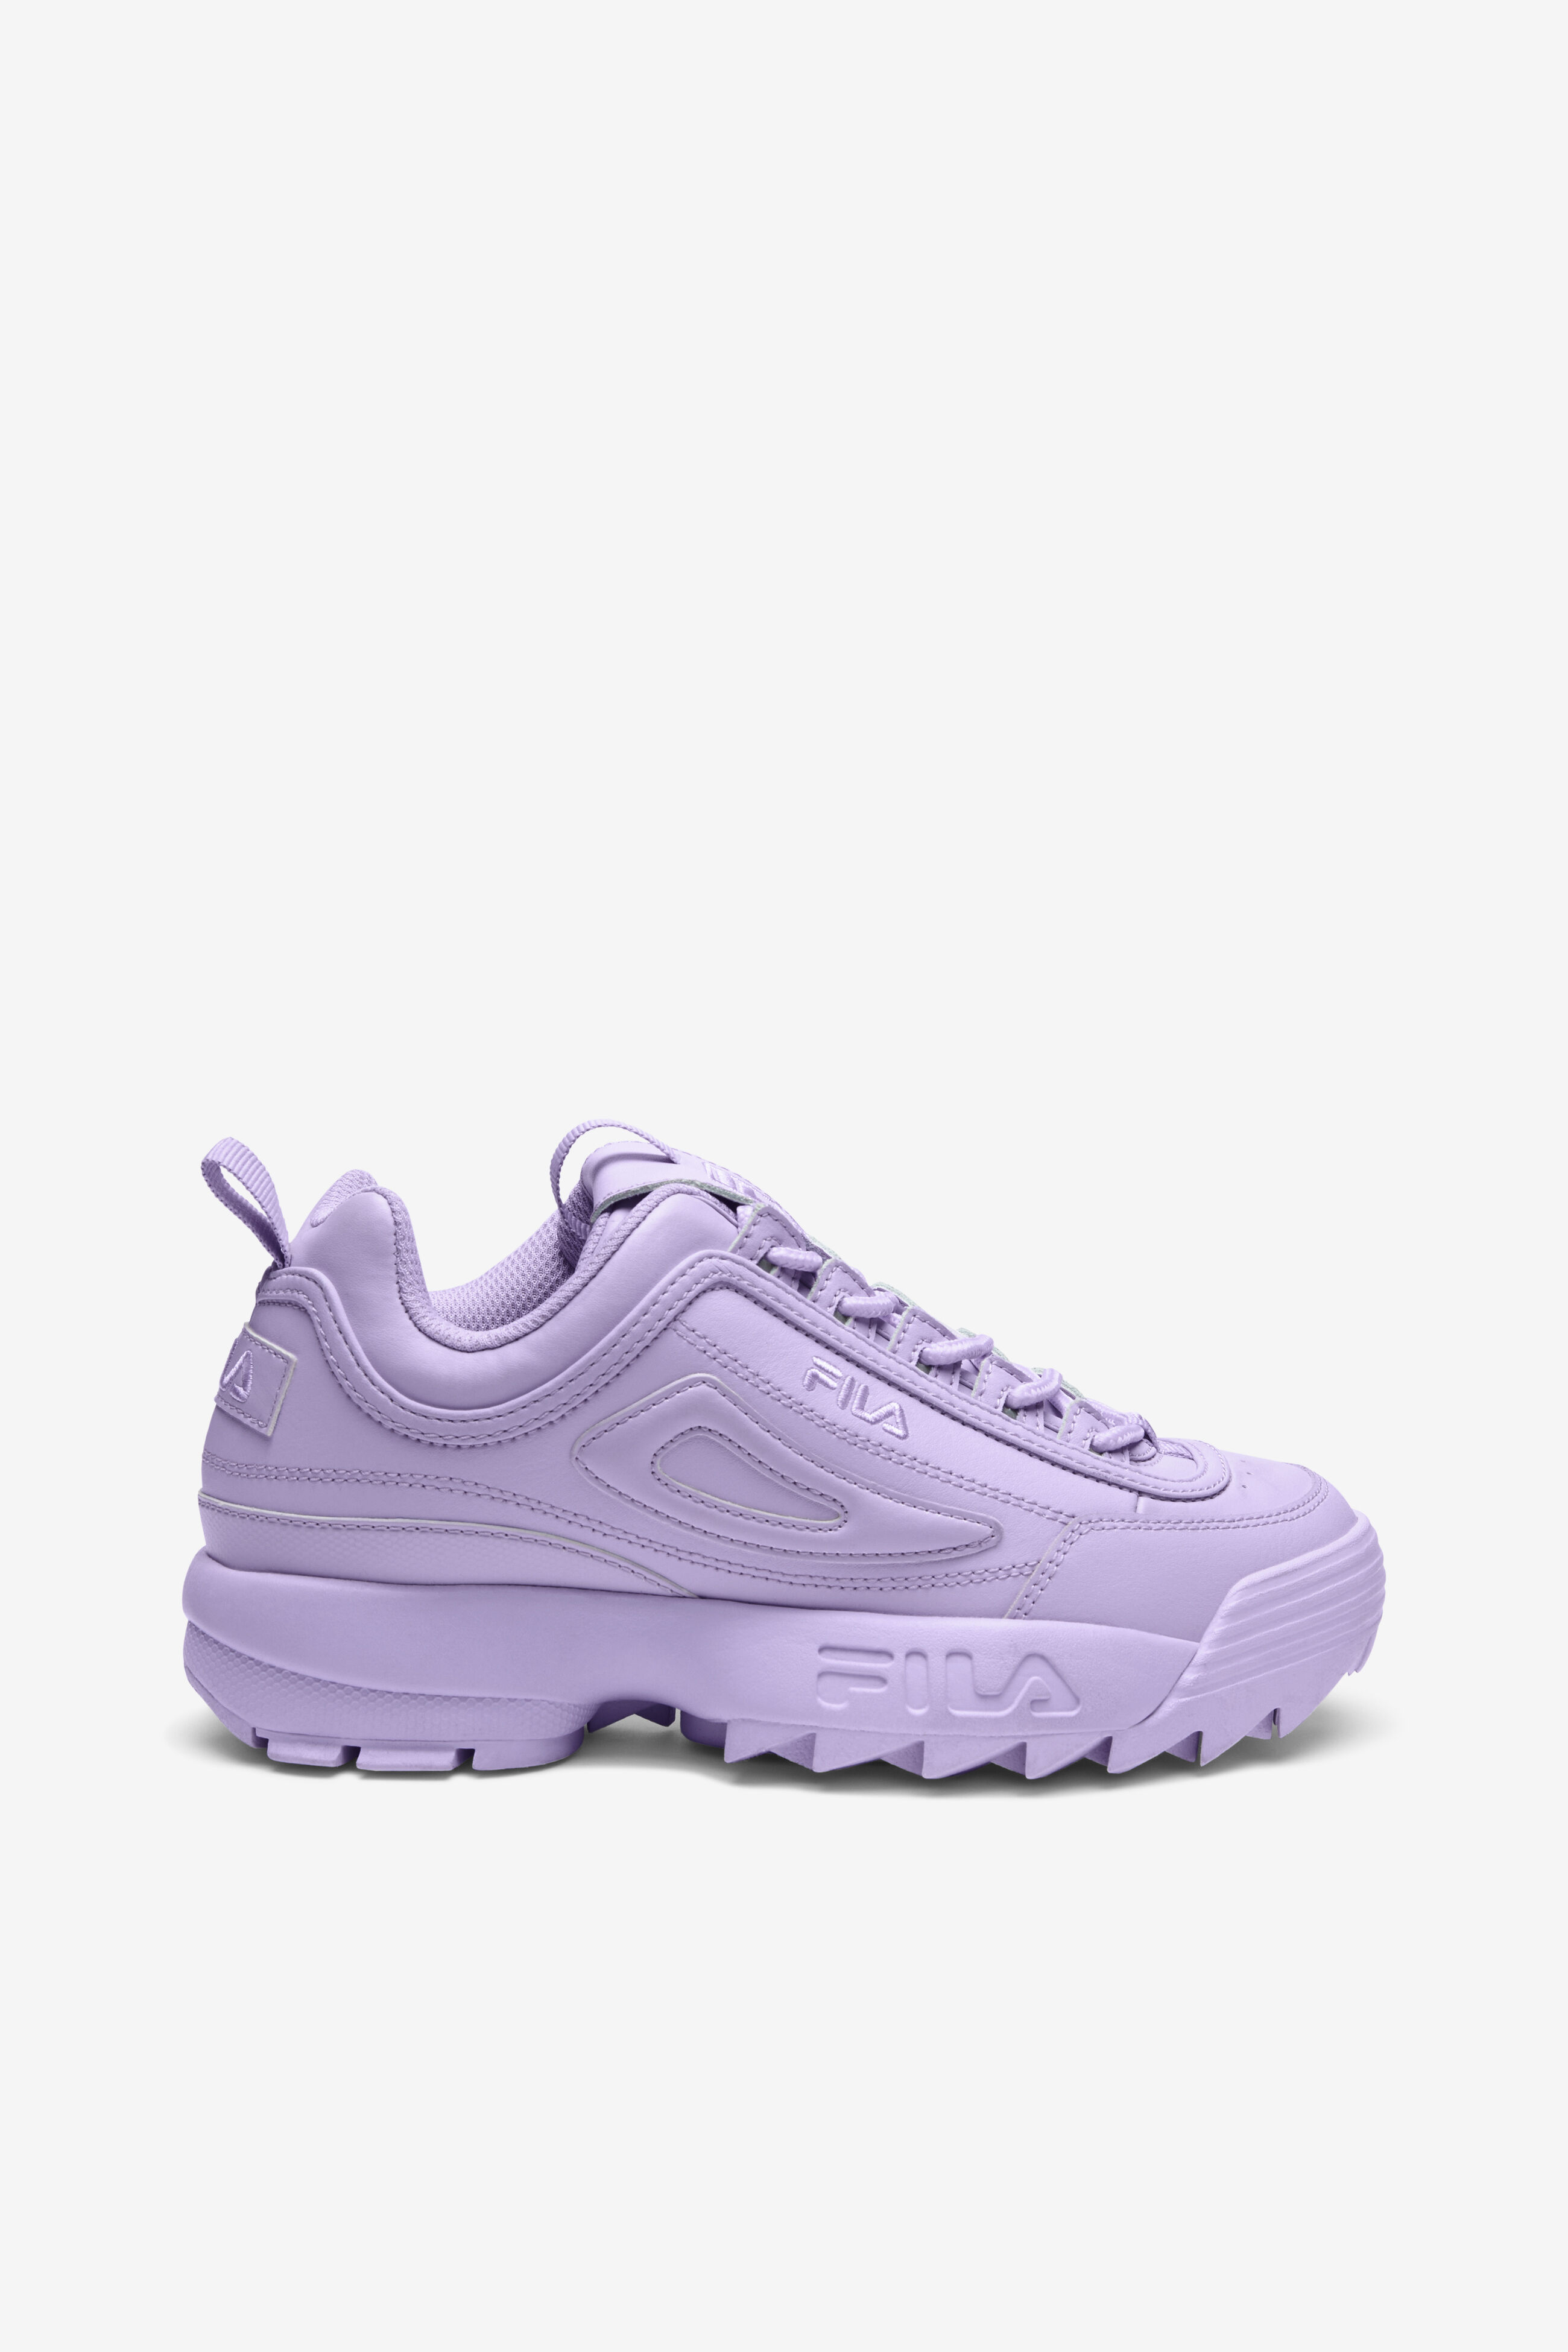 Fila Light Purple Women's Sneakers